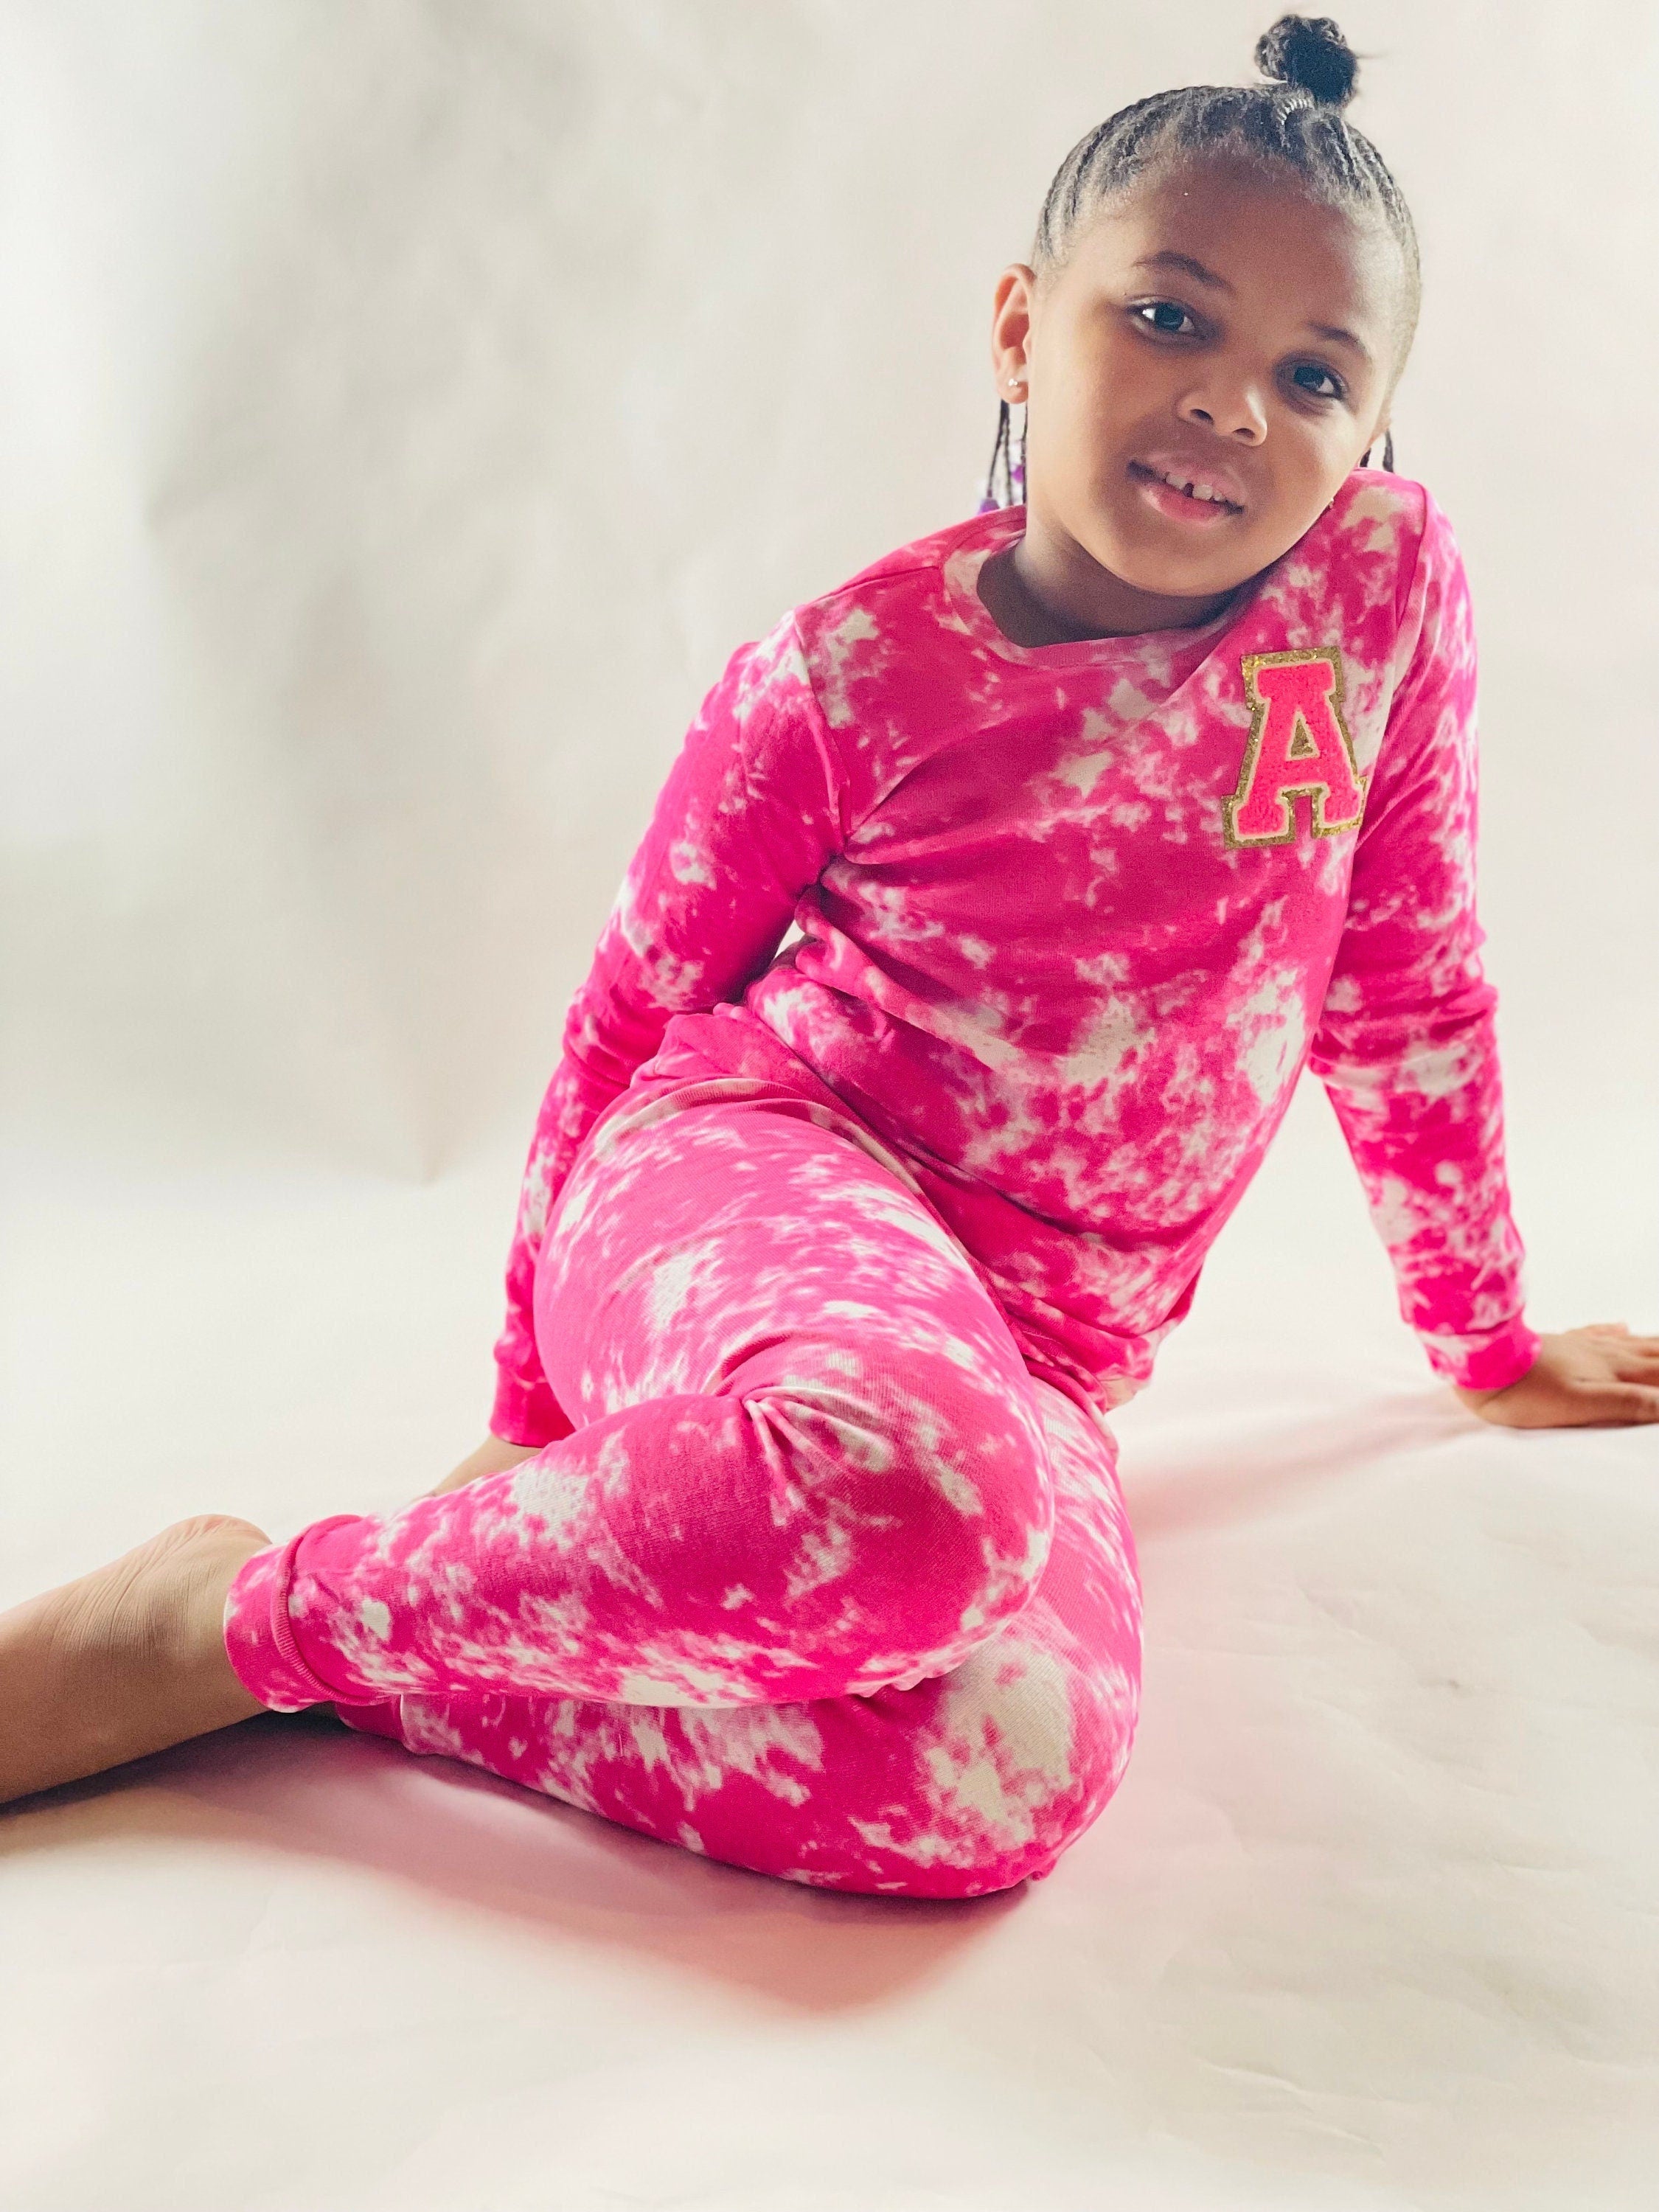 Kids Personalized Pajamas| Pajamas for Girl and Boys| Toddler Pajamas| Youth Pajamas| Gift| Sleepover| Slumber Party| Hot Pink| Tie Dye